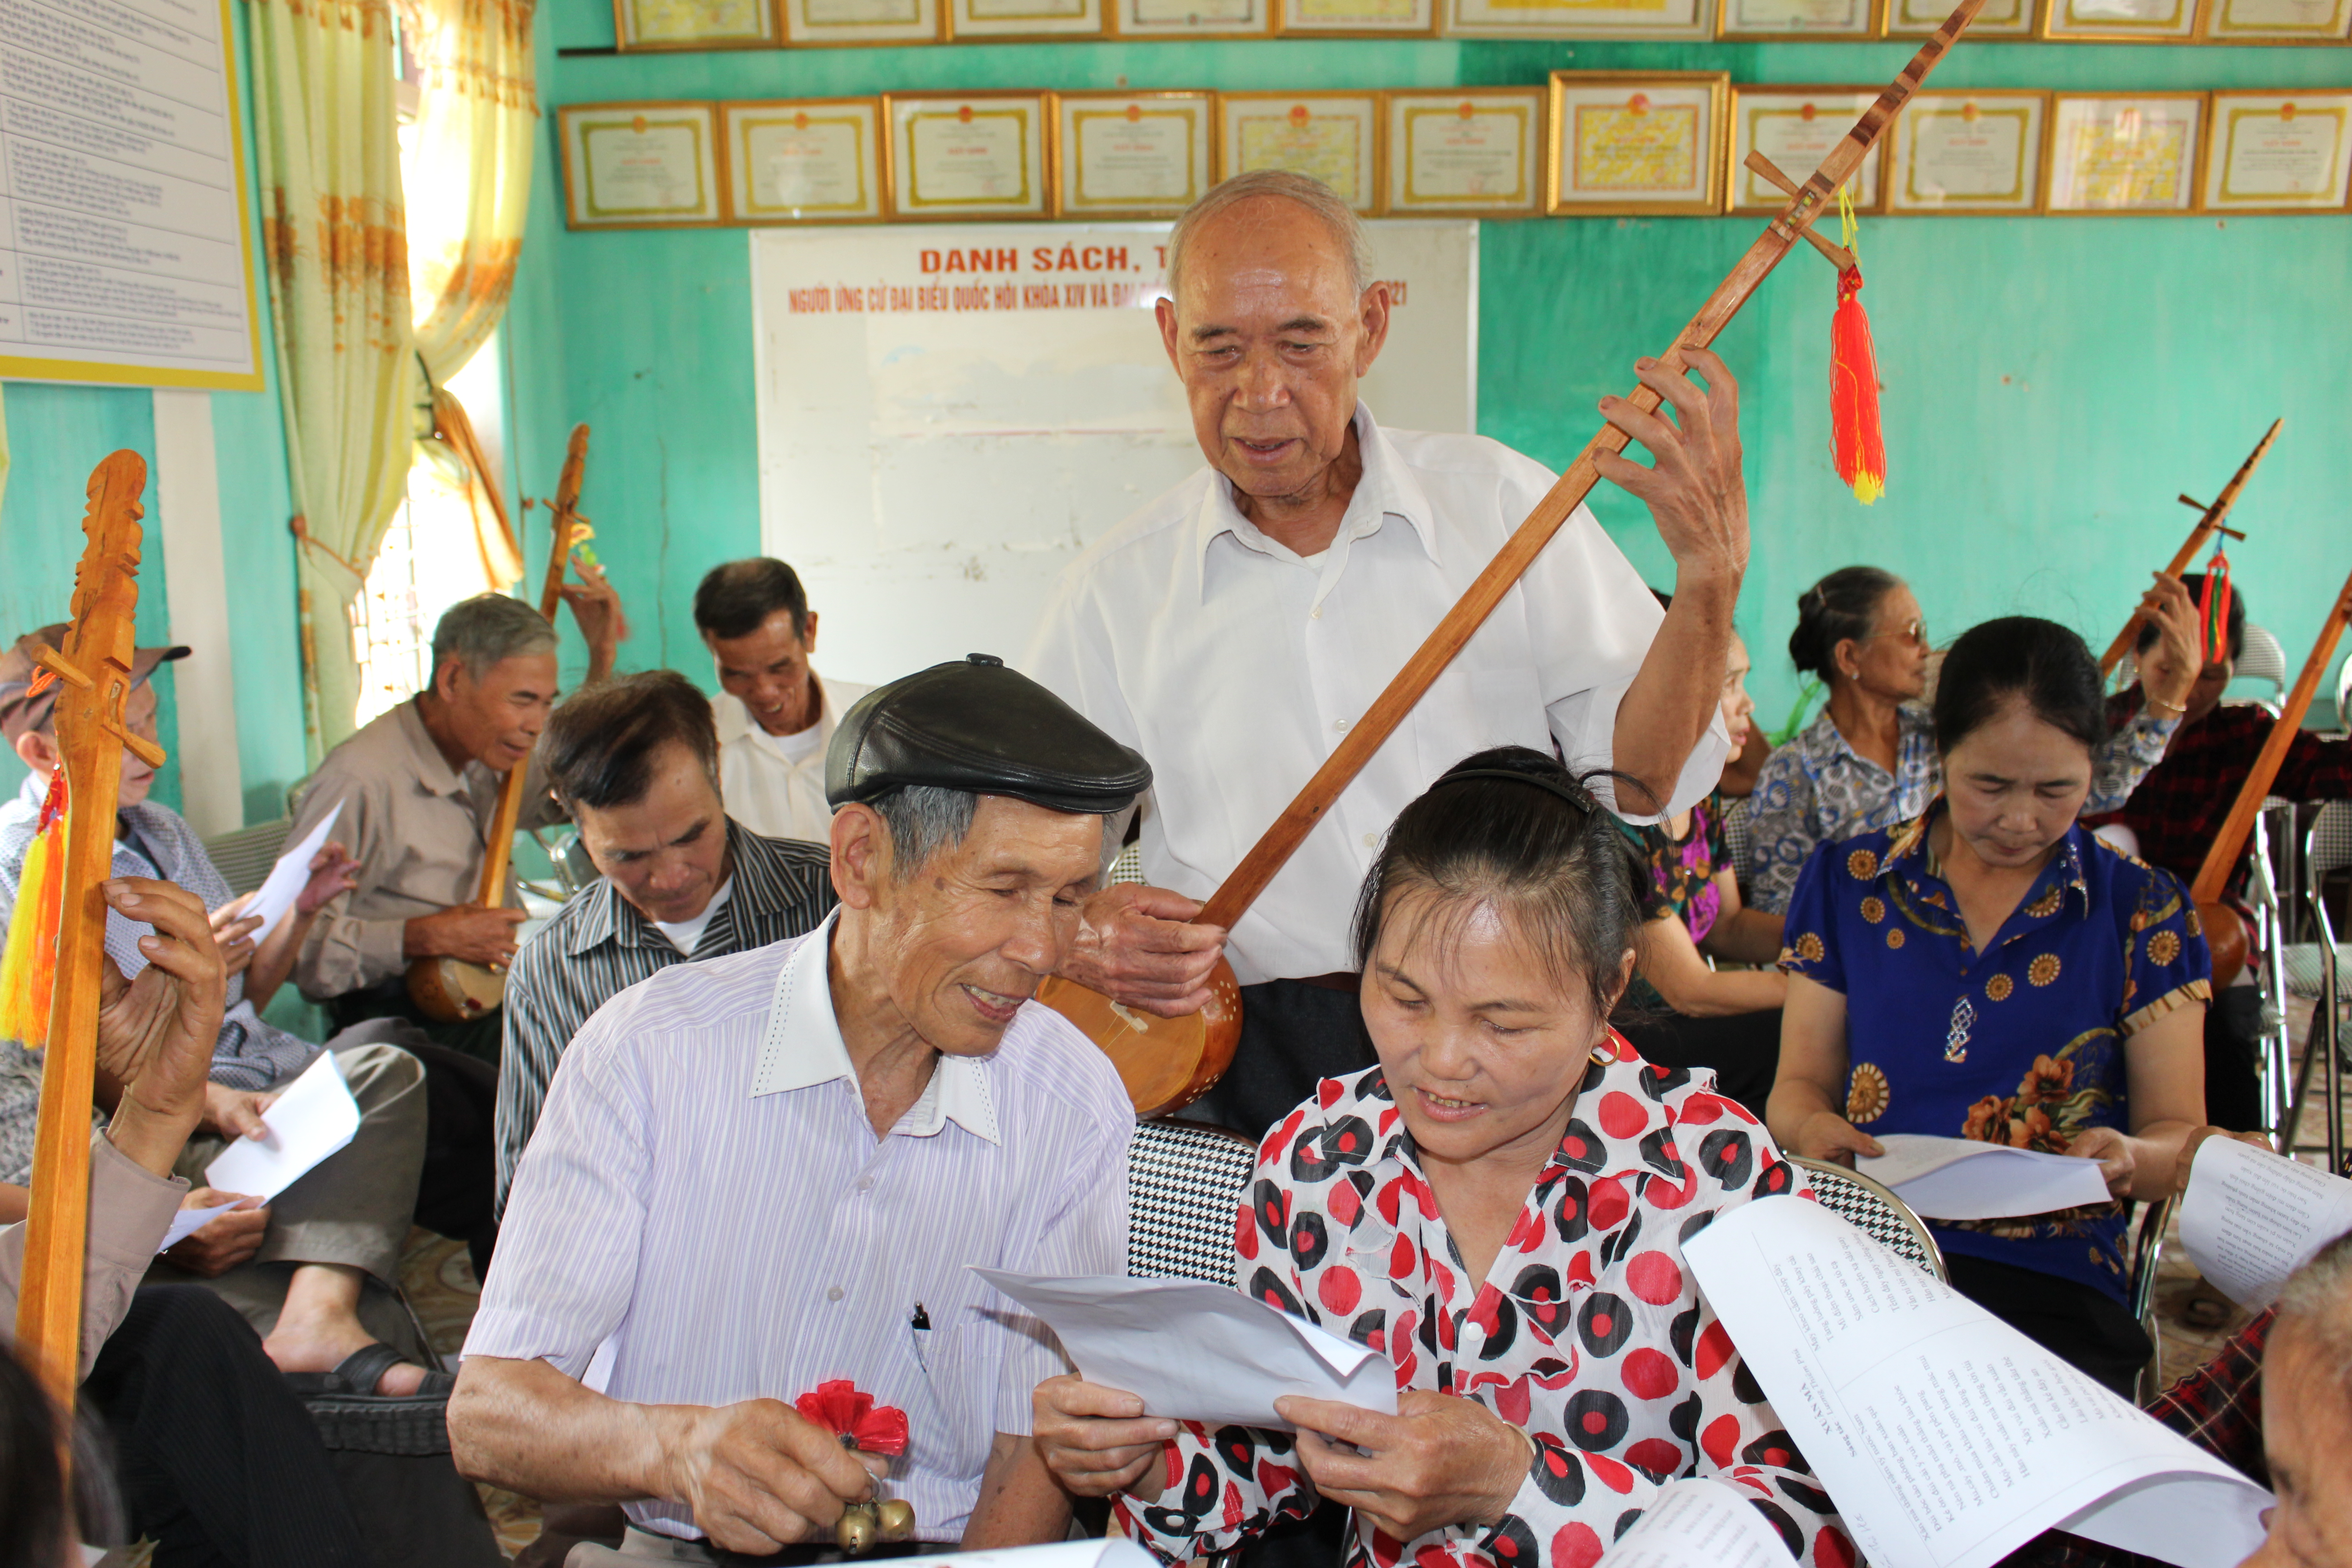 Câu lạc bộ hát then, đàn tỉnh được tổ chức tại nhà văn hóa thôn Trung Lương, xã Tràng Lương, TX Đông Triều